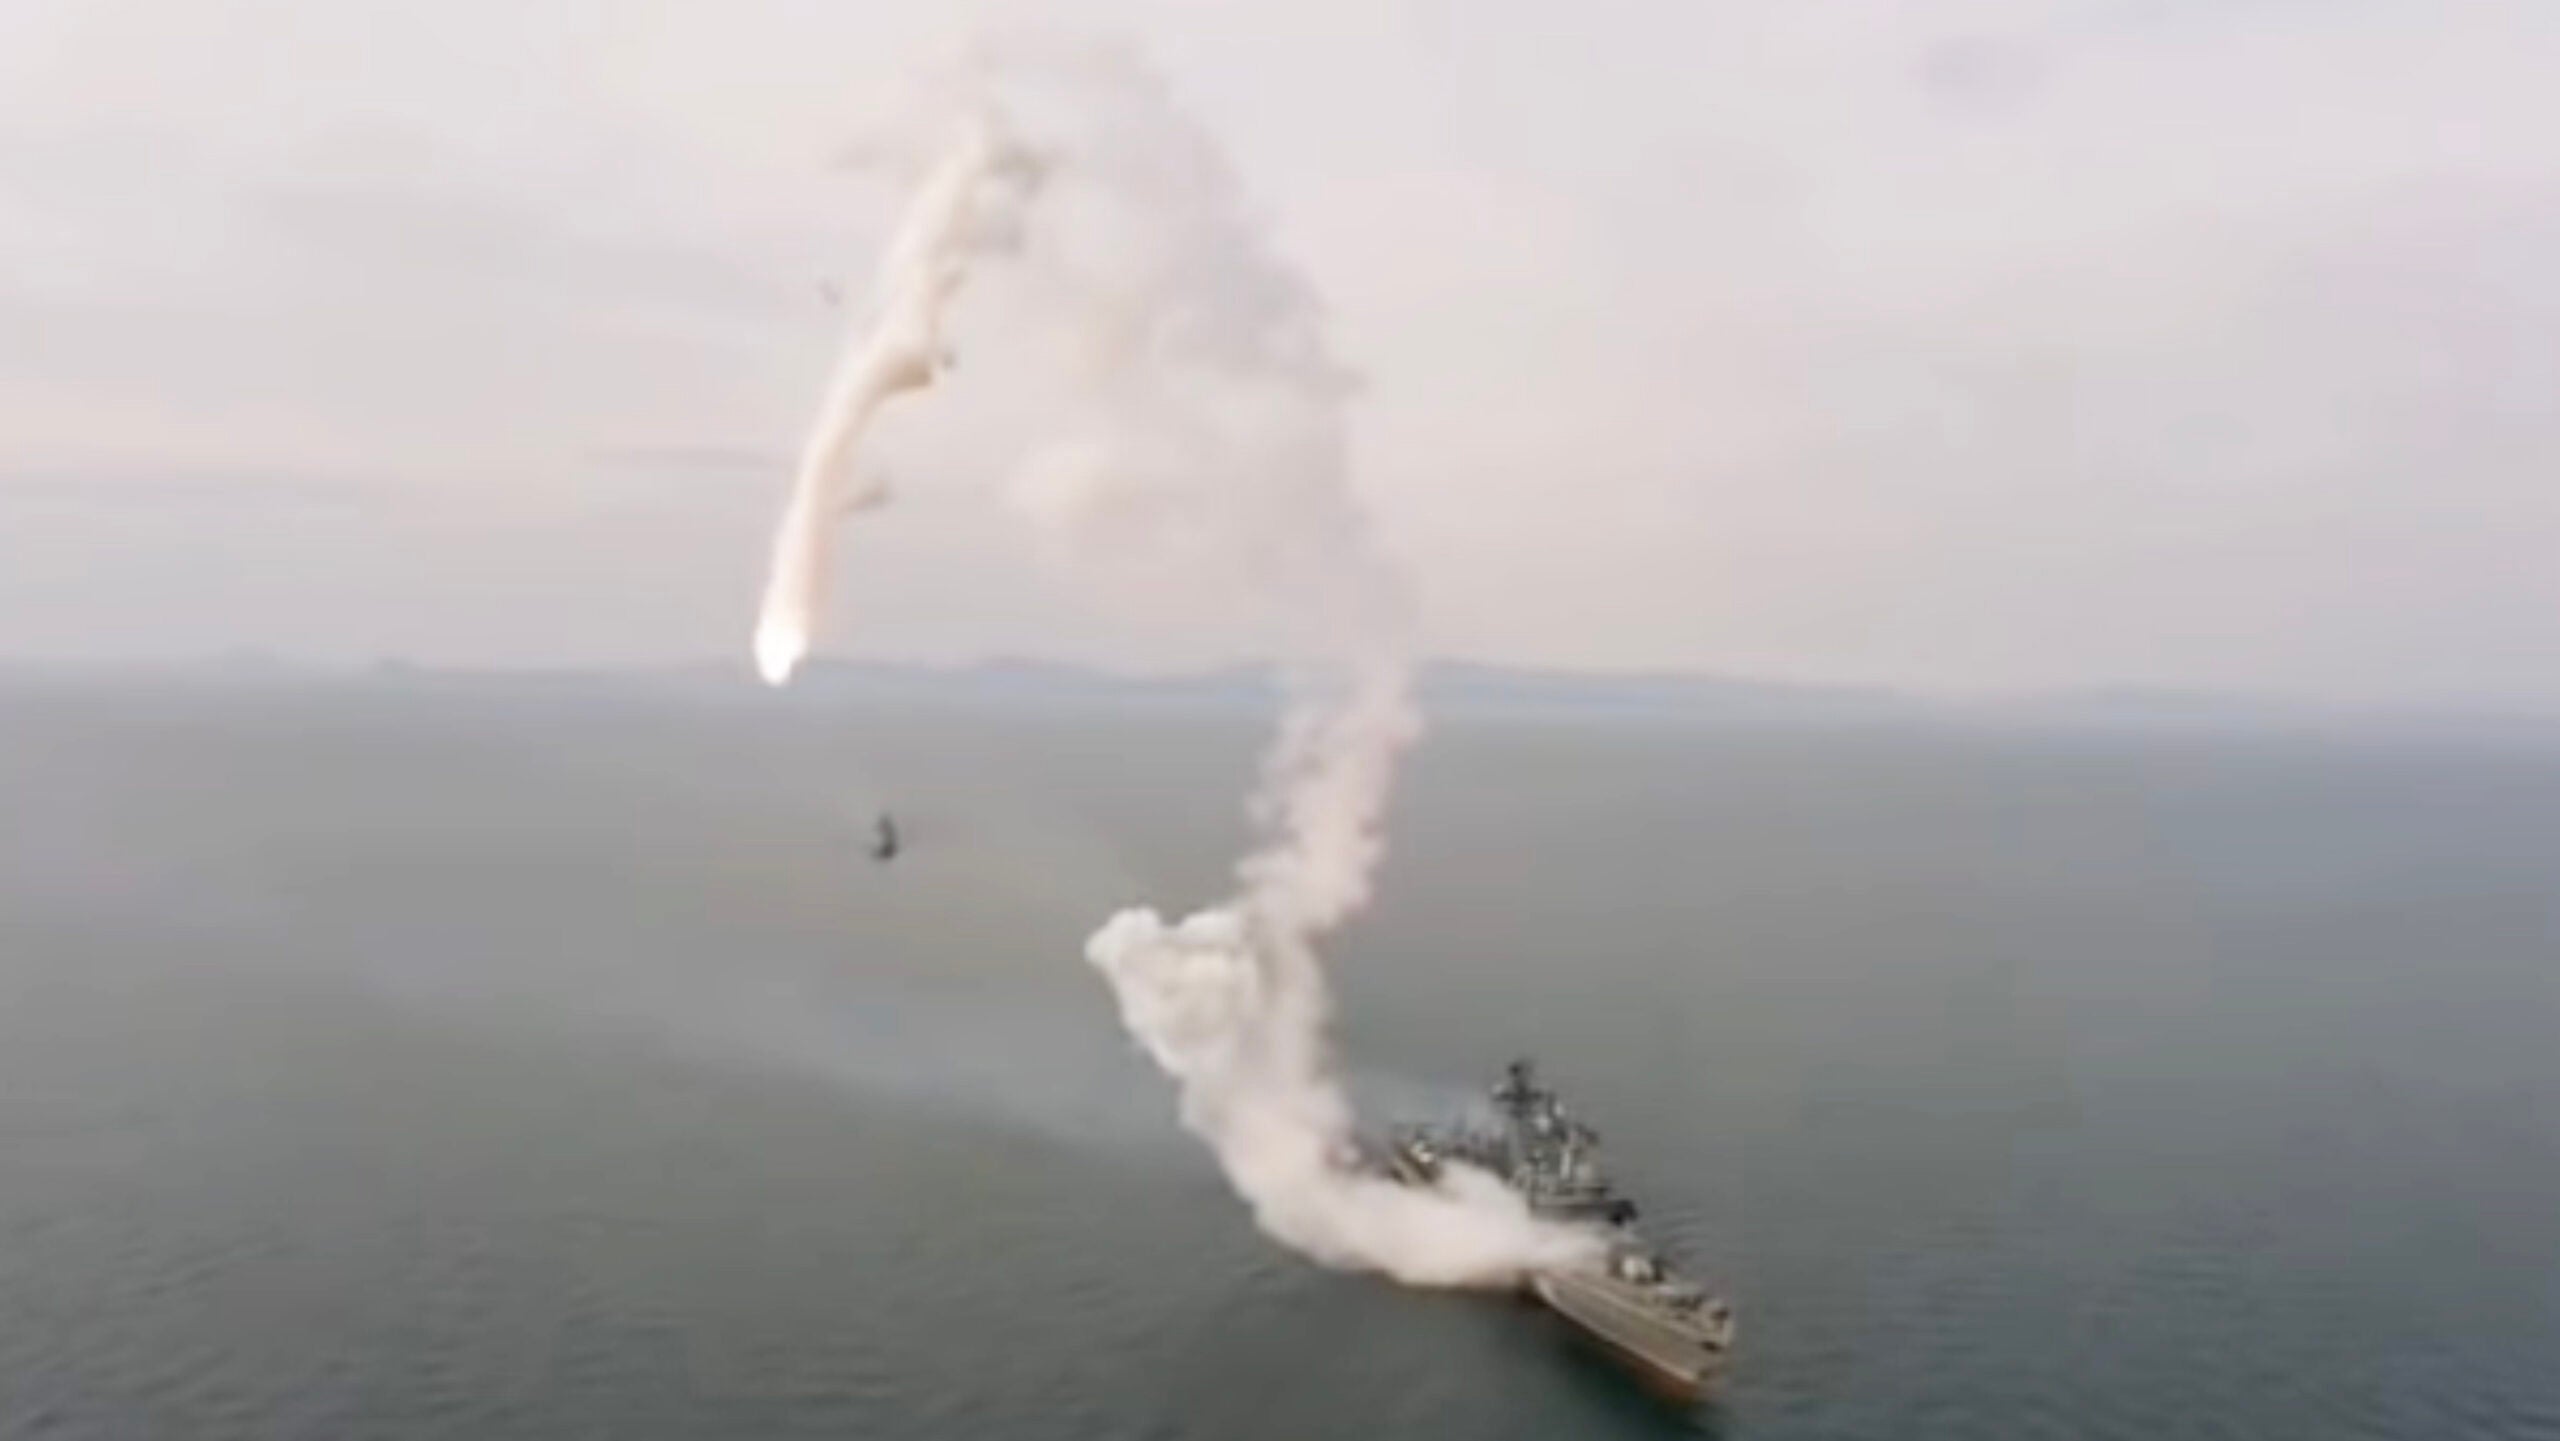 cruise missile hits poland